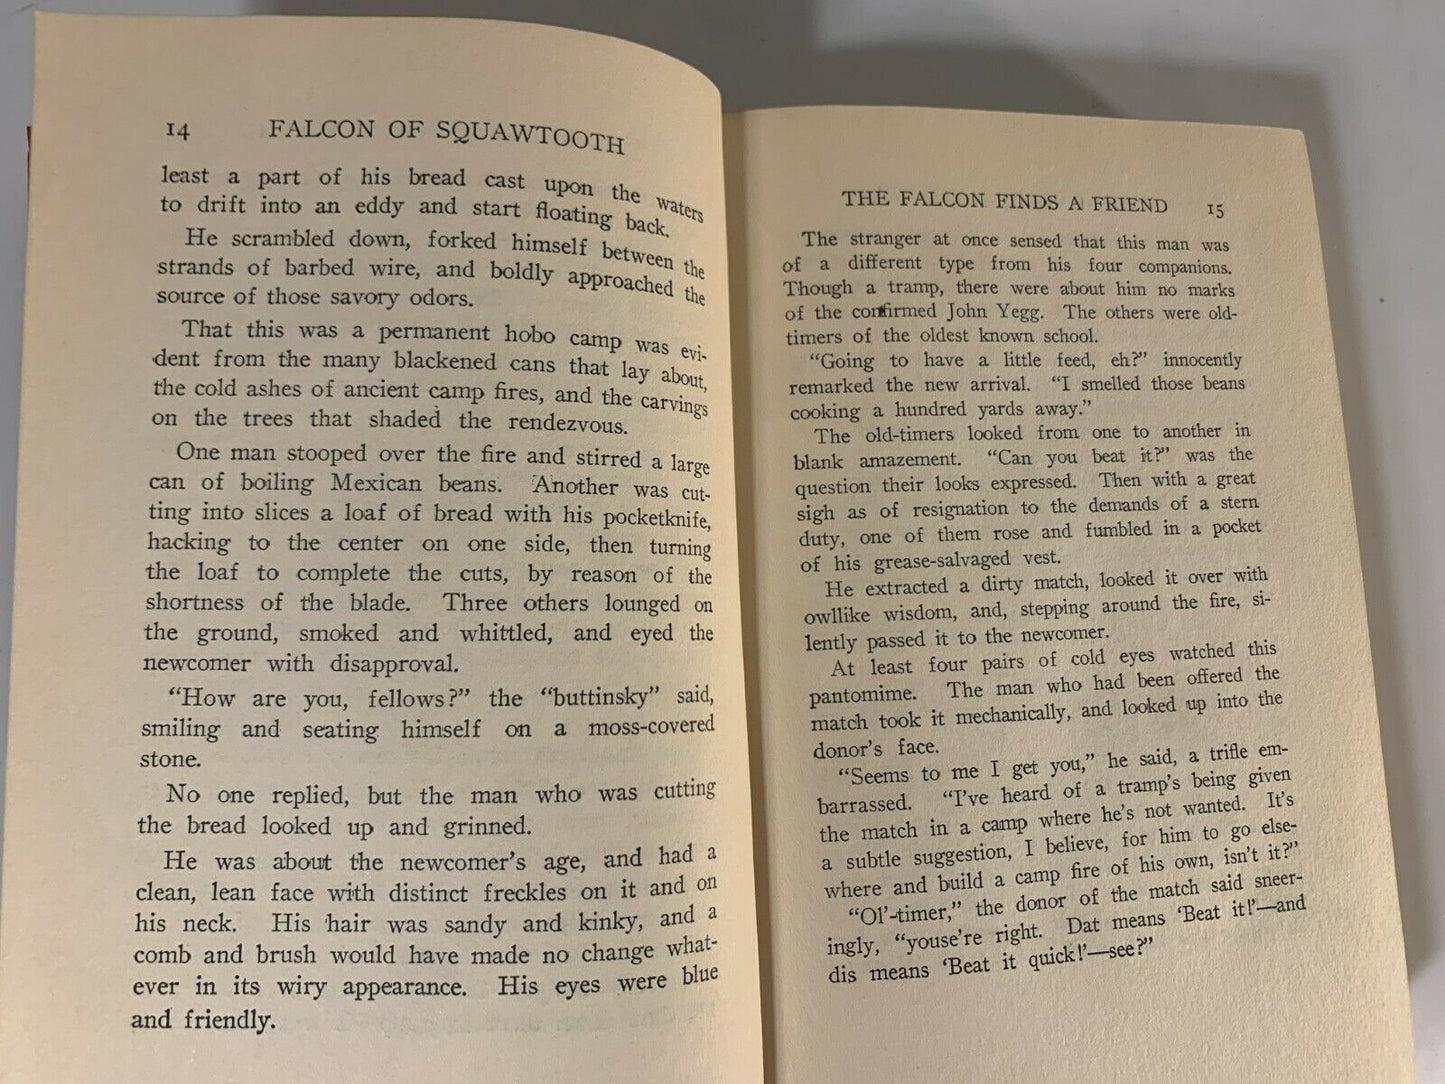 Falcon of Squawtooth: A Western Story, Arthur Preston Hankins (1923) K3